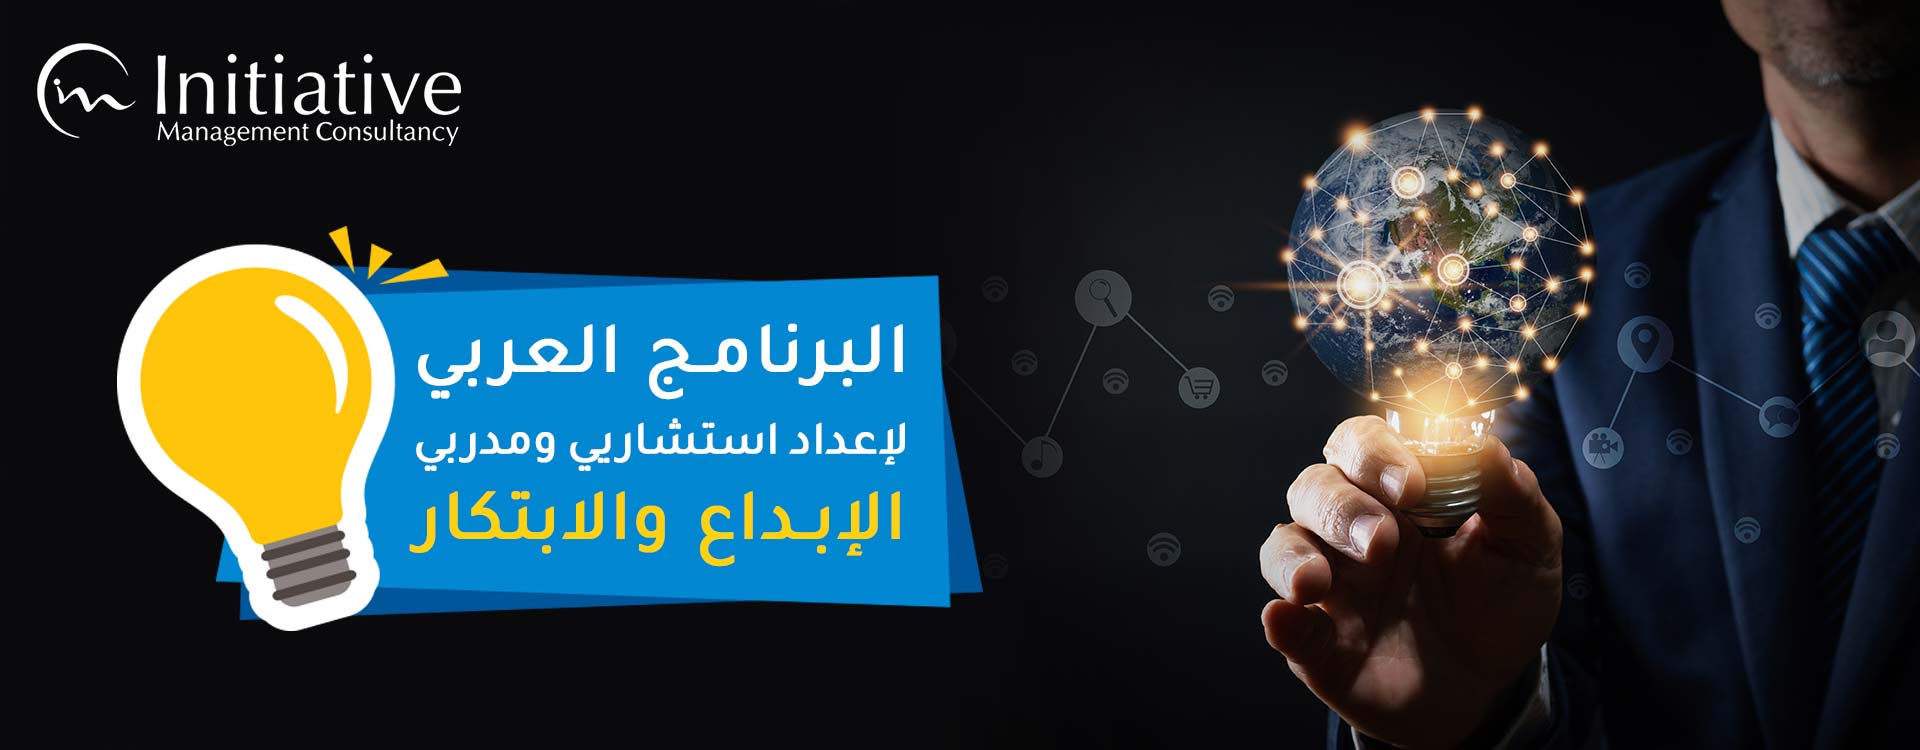 البرنامج العربي لإعداد استشاريي ومدربي الإبداع والابتكار